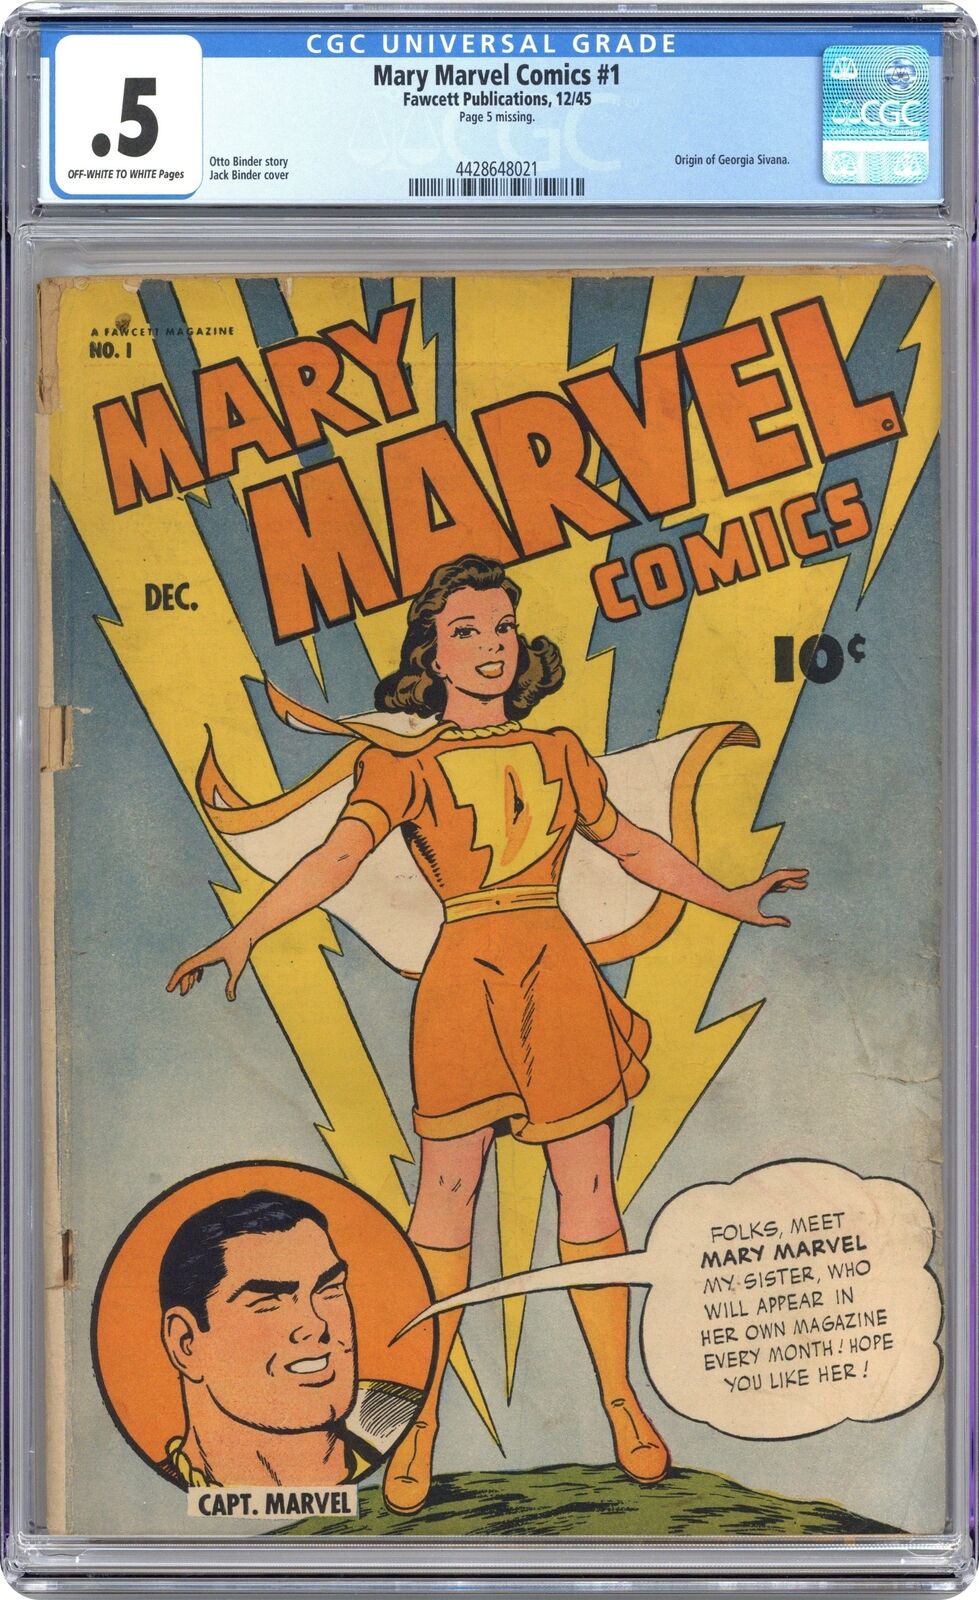 Mary Marvel Comics #1 CGC 0.5 1945 4428648021